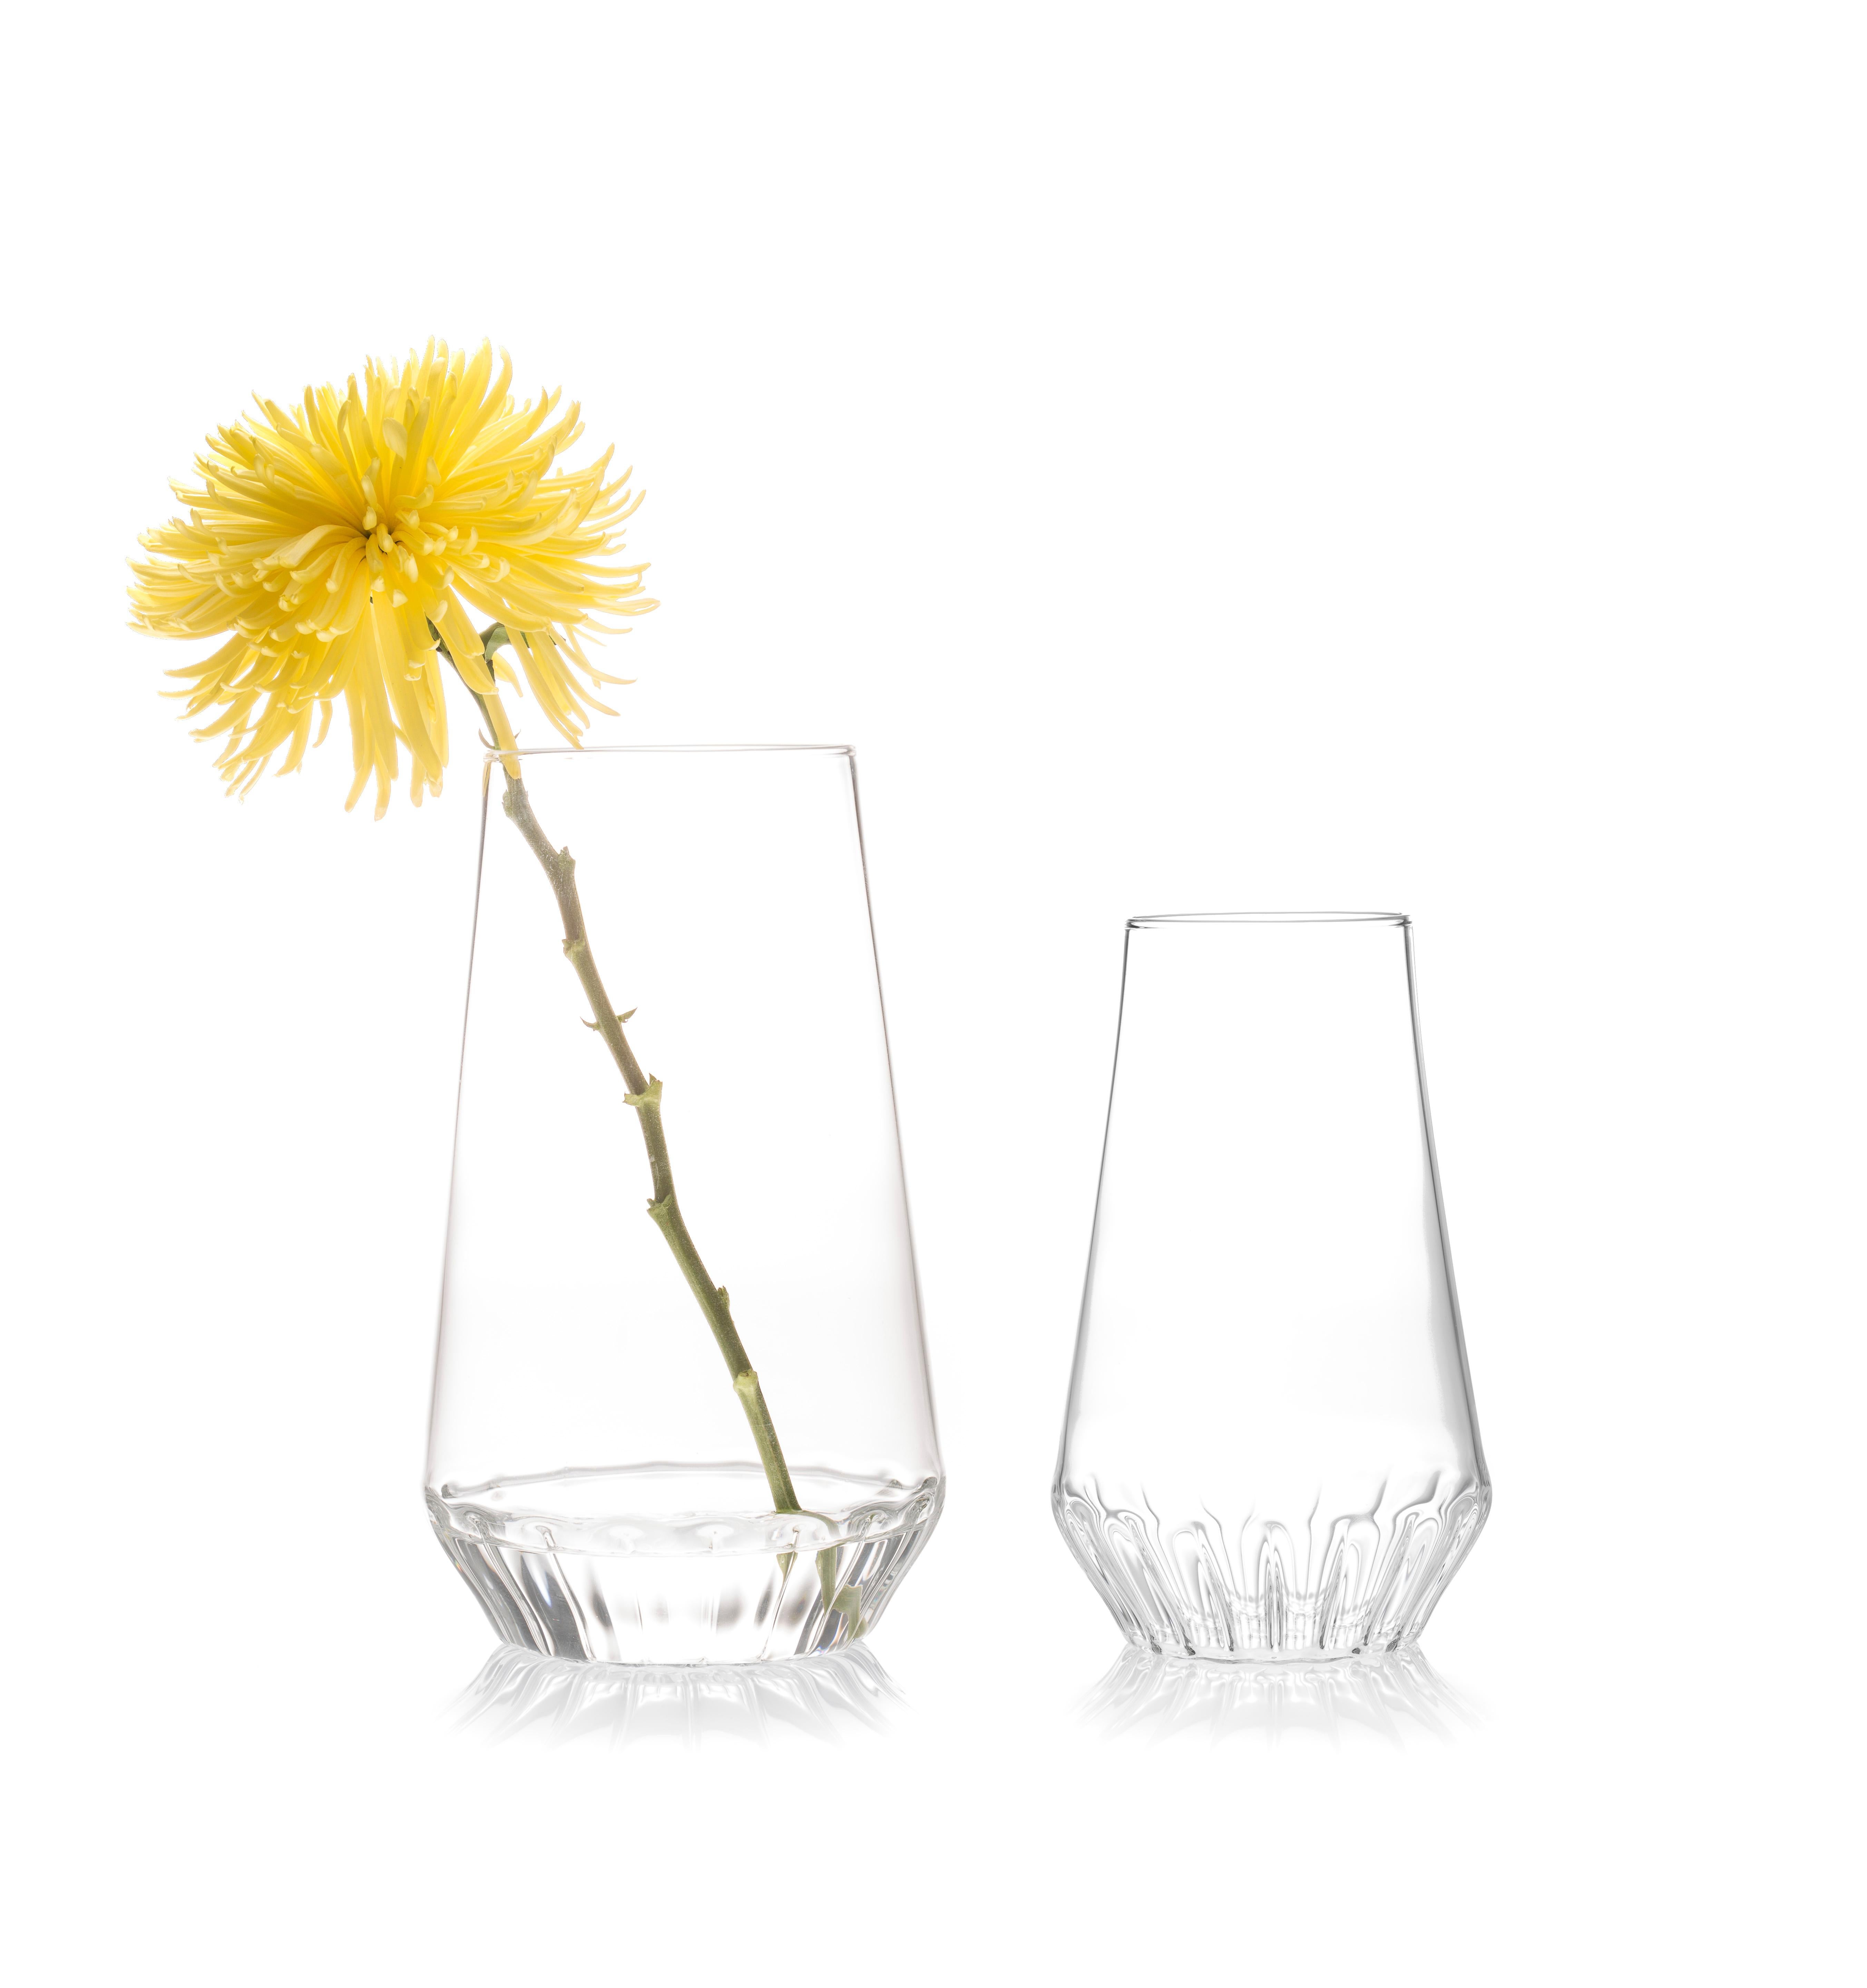 Rossi Vasen Large & Medium - 2er-Set

Ob ein einzelner Stiel oder ein Strauß, das klare Glas hebt den Blumenstiel hervor und macht ihn zu einem festen Bestandteil des Arrangements. Der linsenförmige Effekt des geriffelten Glases an der
Der Boden